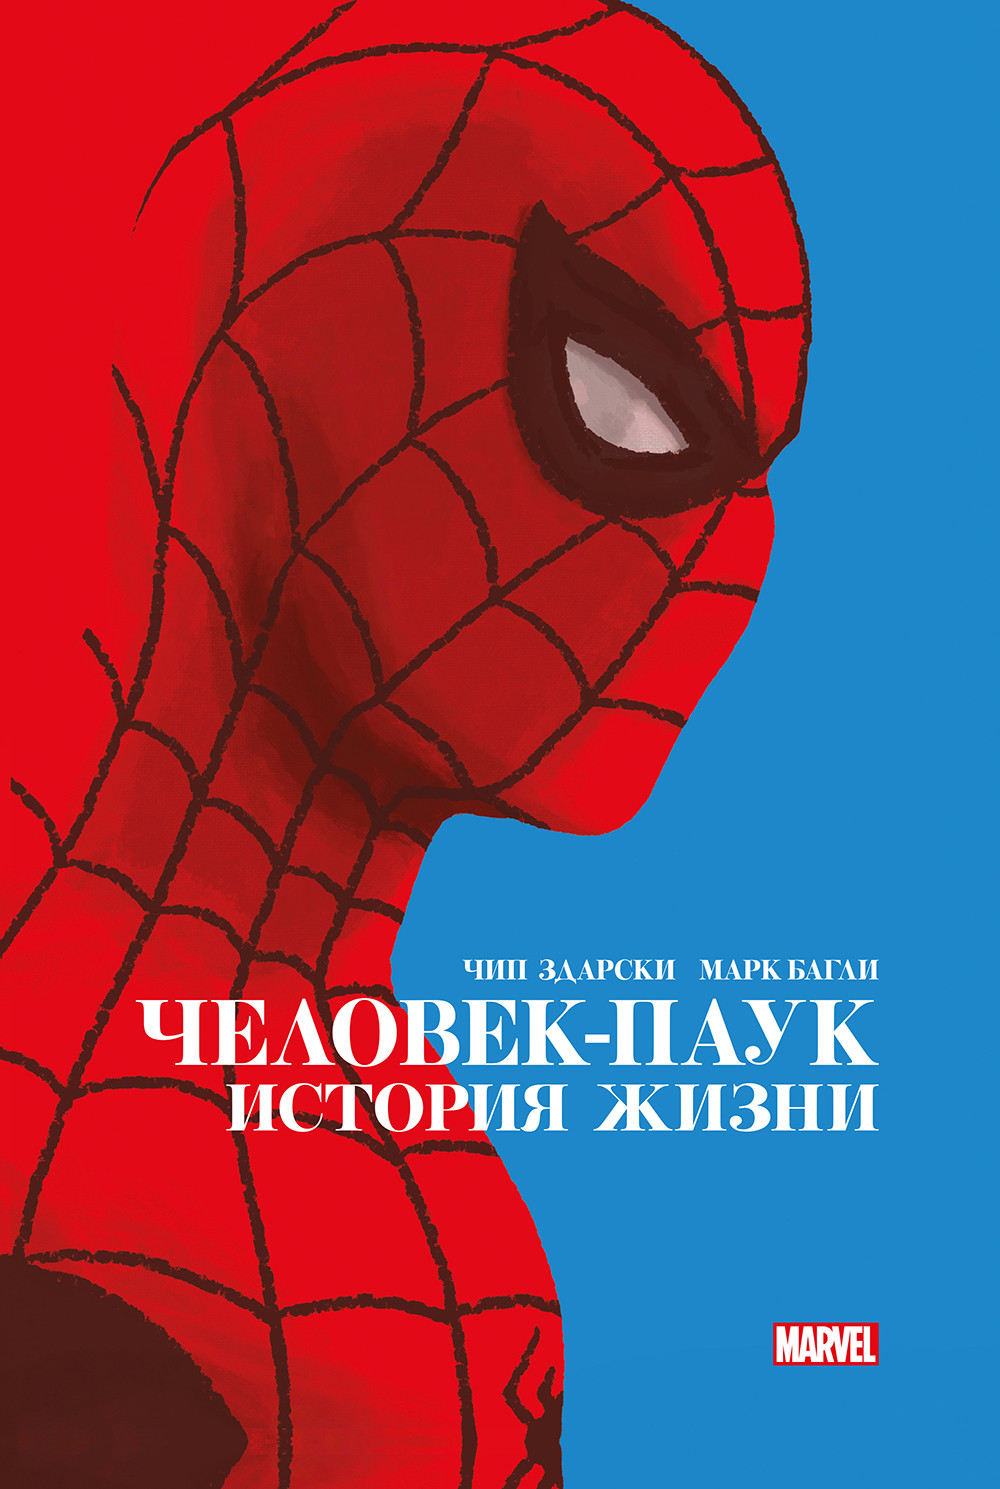 Комикс Человек-паук и Чёрная Кошка + История жизни. Комплект книг